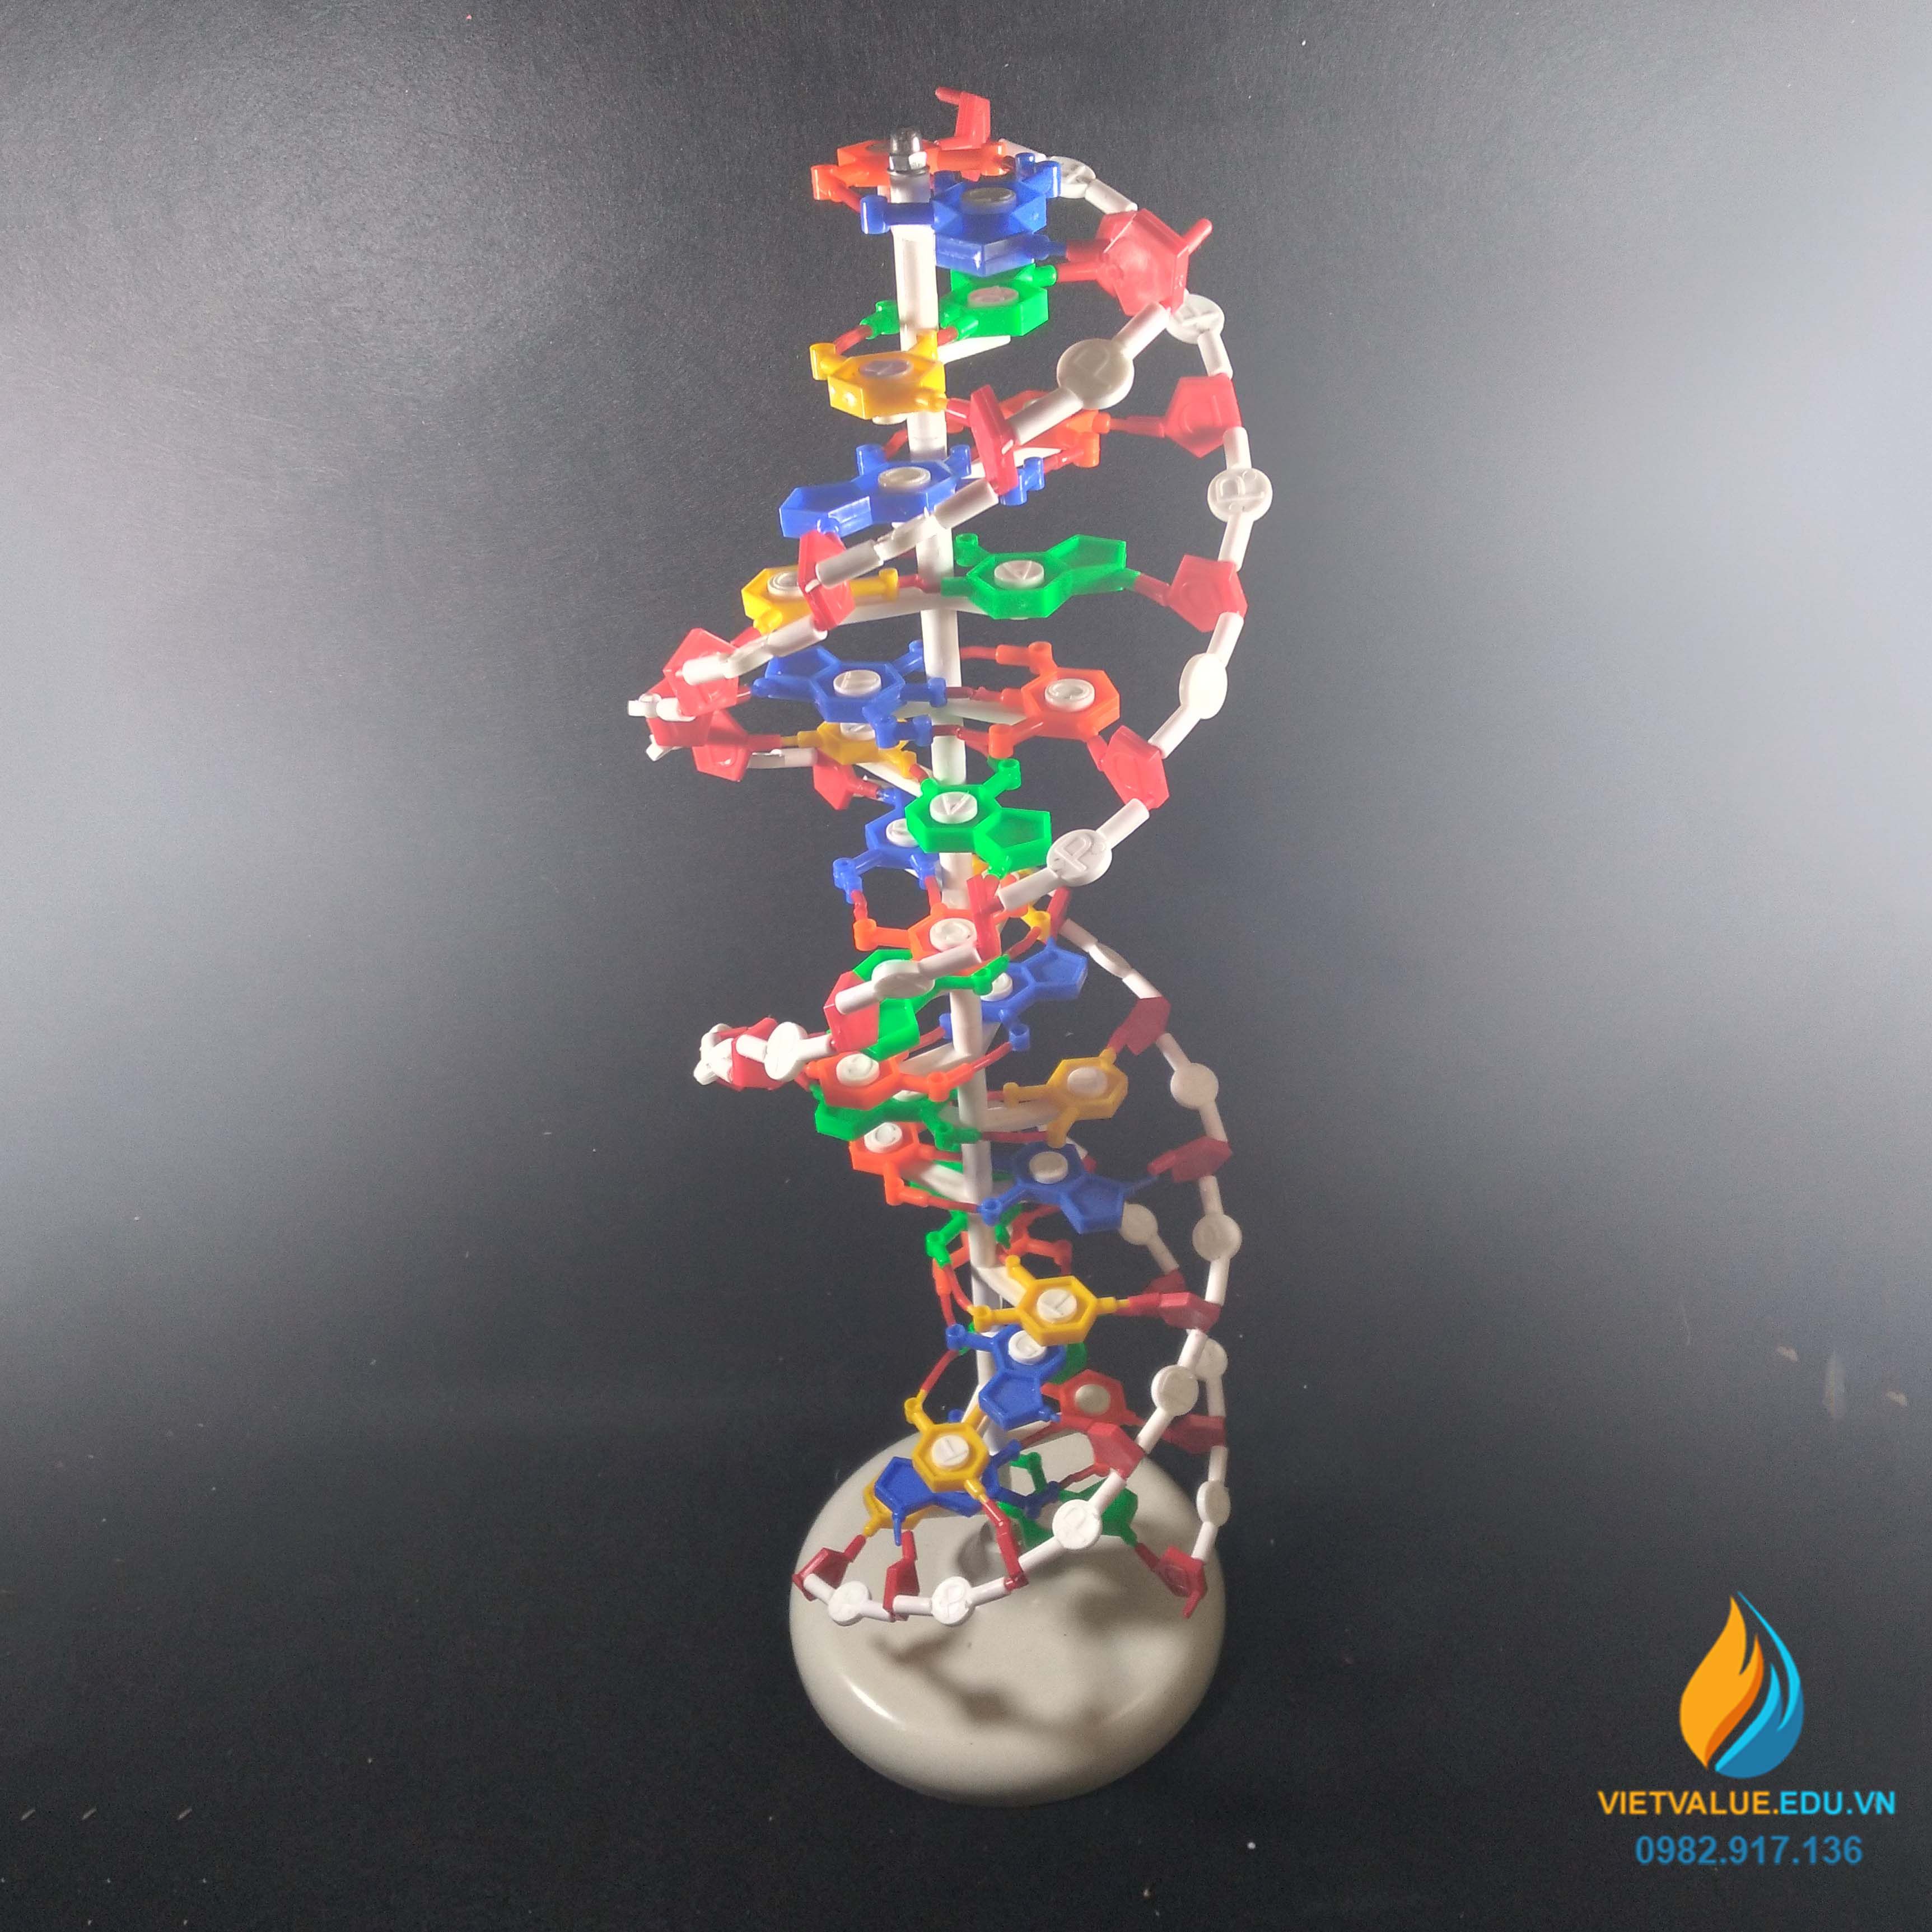 Mô tả cấu trúc không gian của ADN